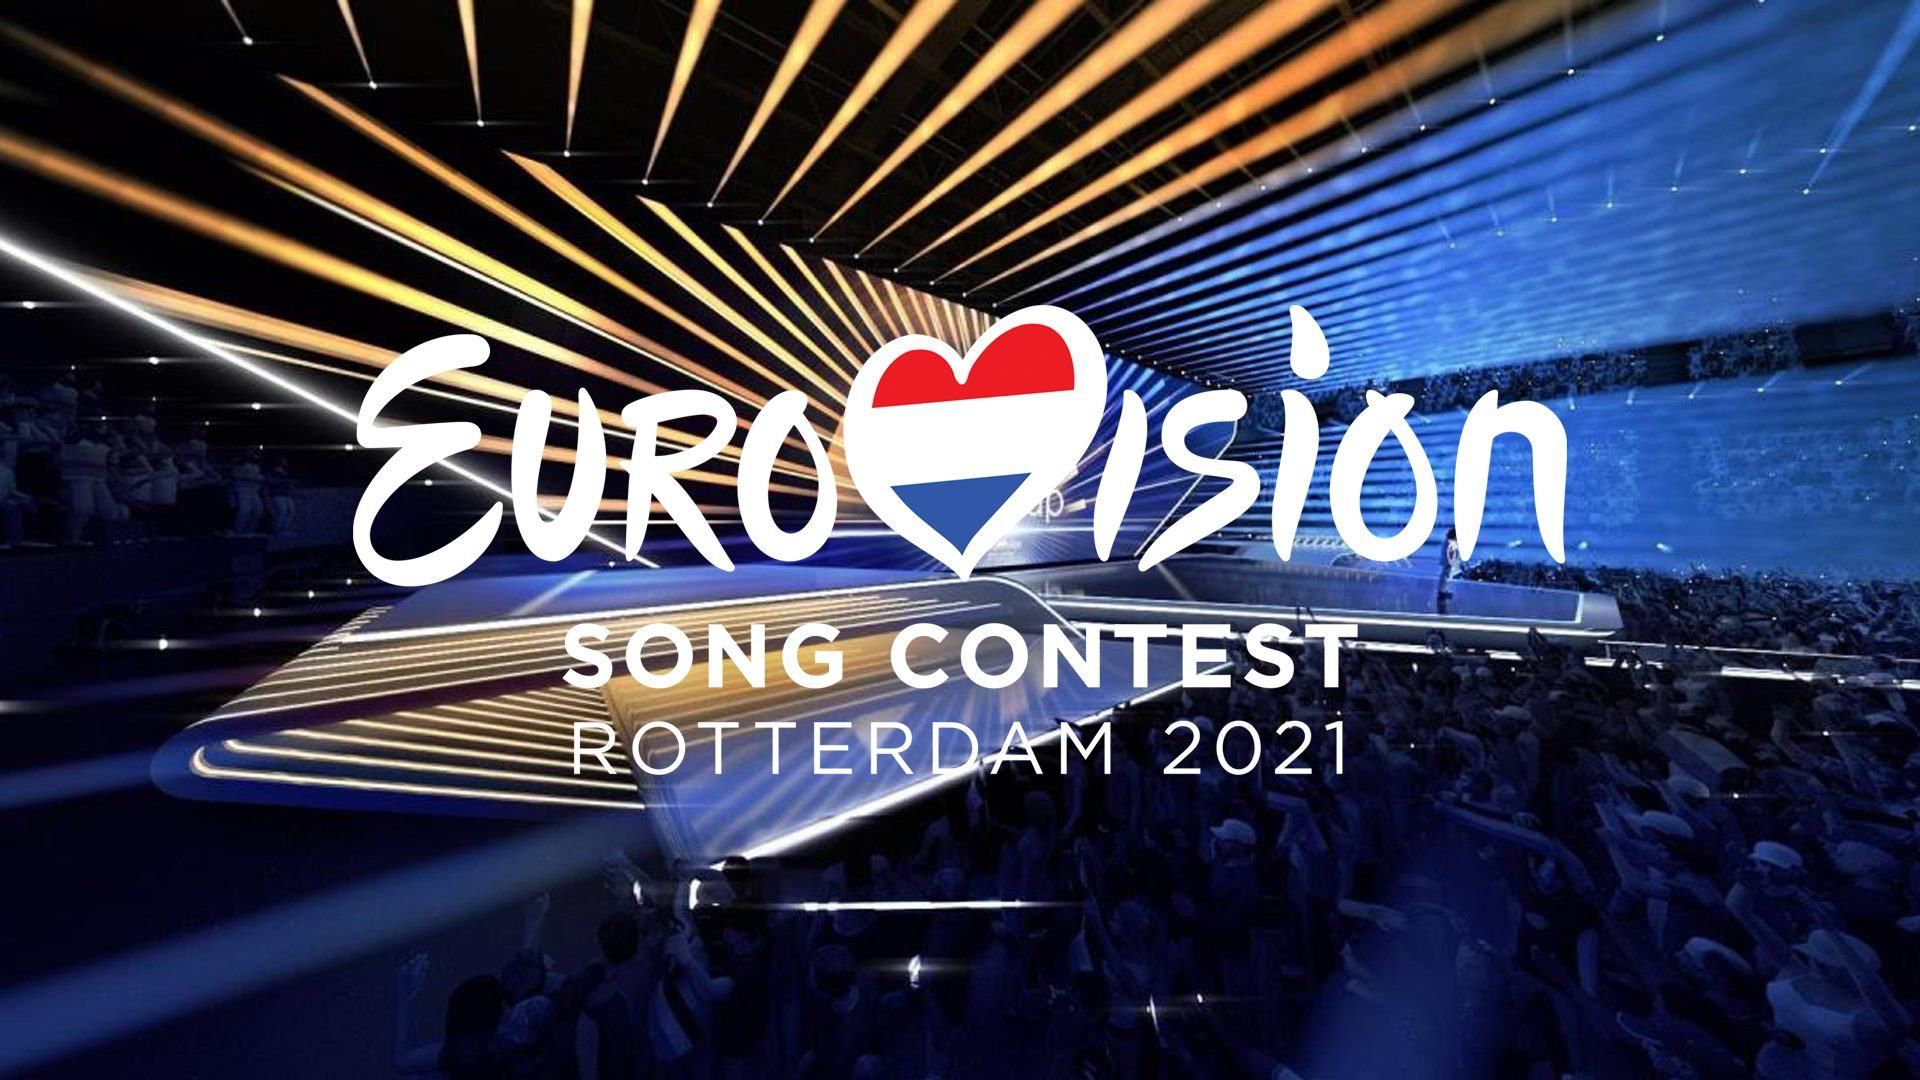 Євробачення 2021: організатори розповіли про чотири варіанти проведення конкурсу